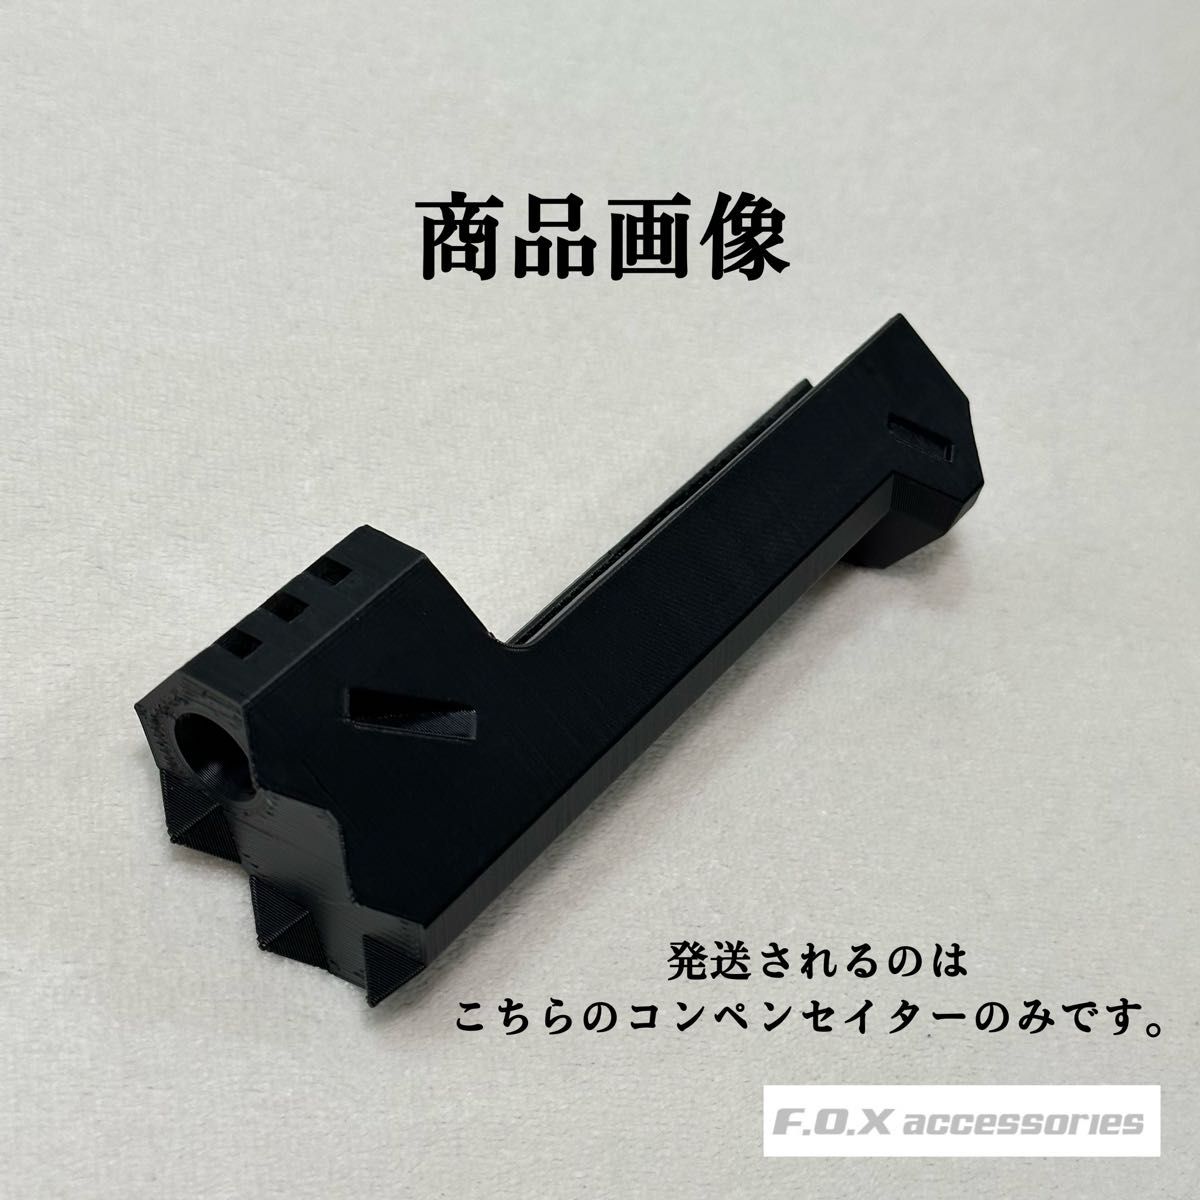 東京マルイ Hi-CAPA 5.1 コンペンセイター リコリスリコイル錦木千束風